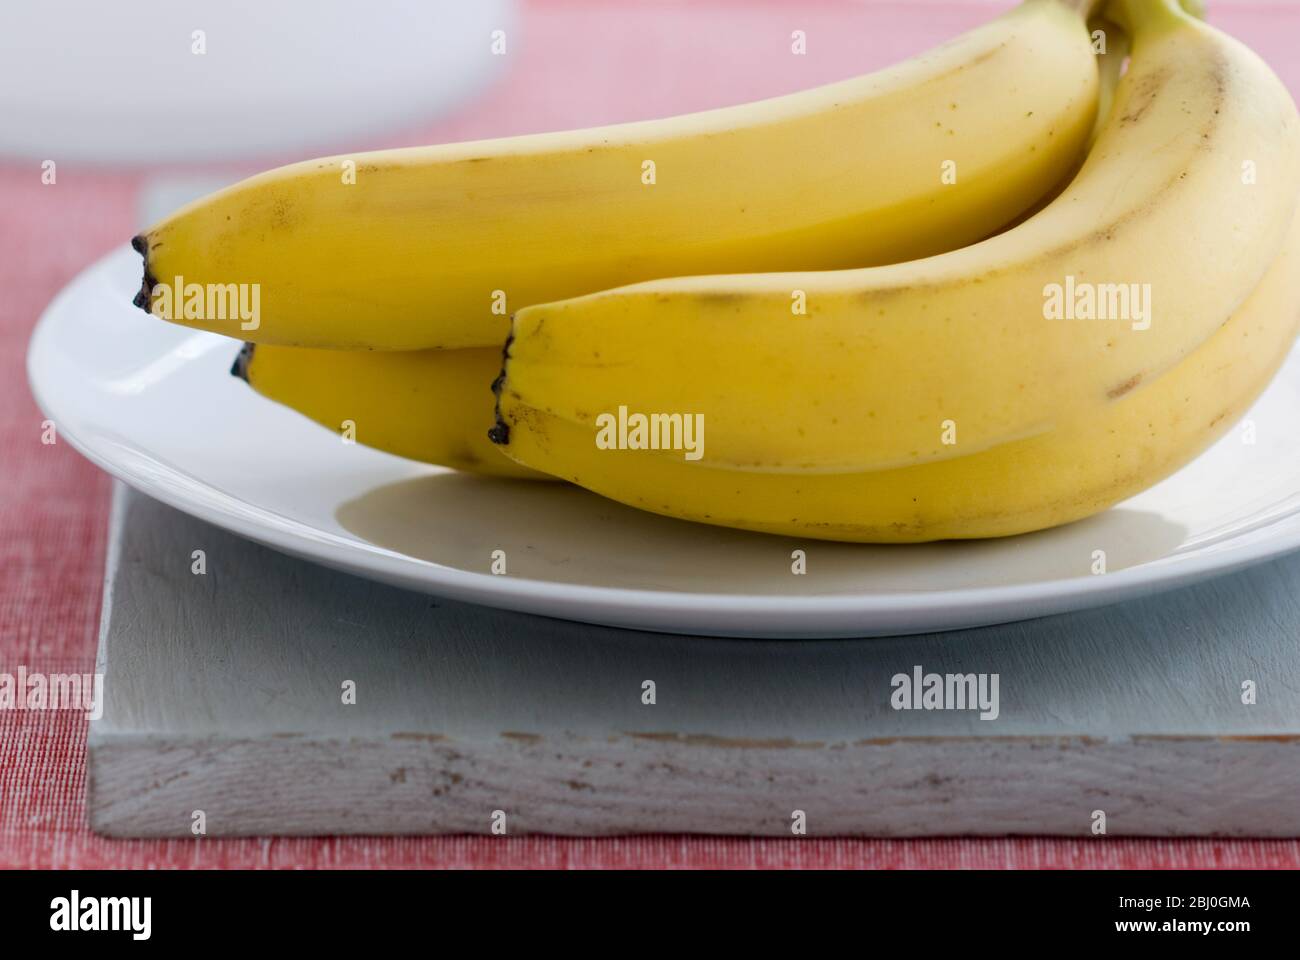 Bananenstrauß auf weißem Teller, auf grauem Brett, mit rotem Hintergrund - Stockfoto